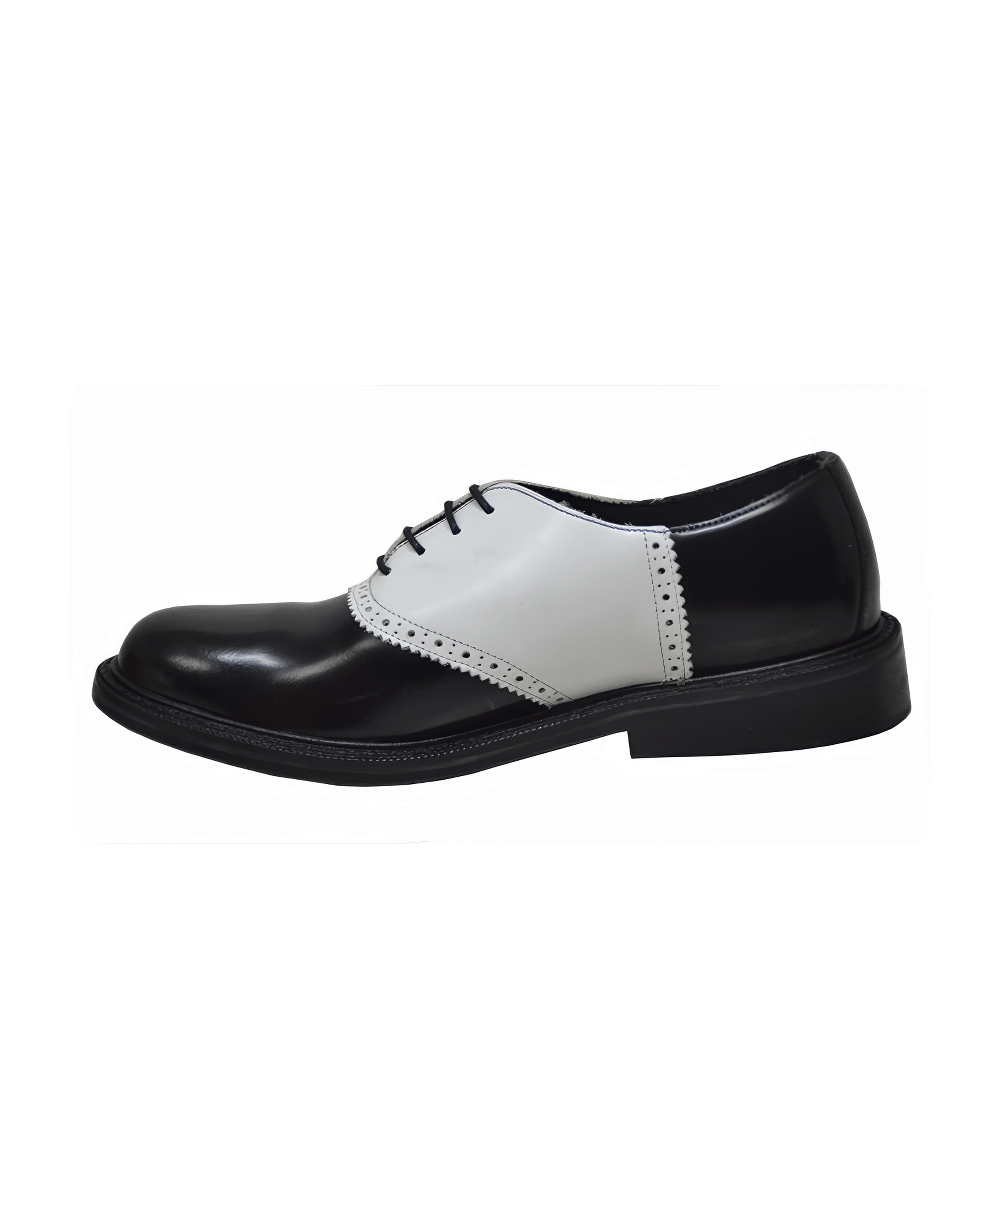 Chaussures en cuir Oxford noir de style Rockabilly pour hommes